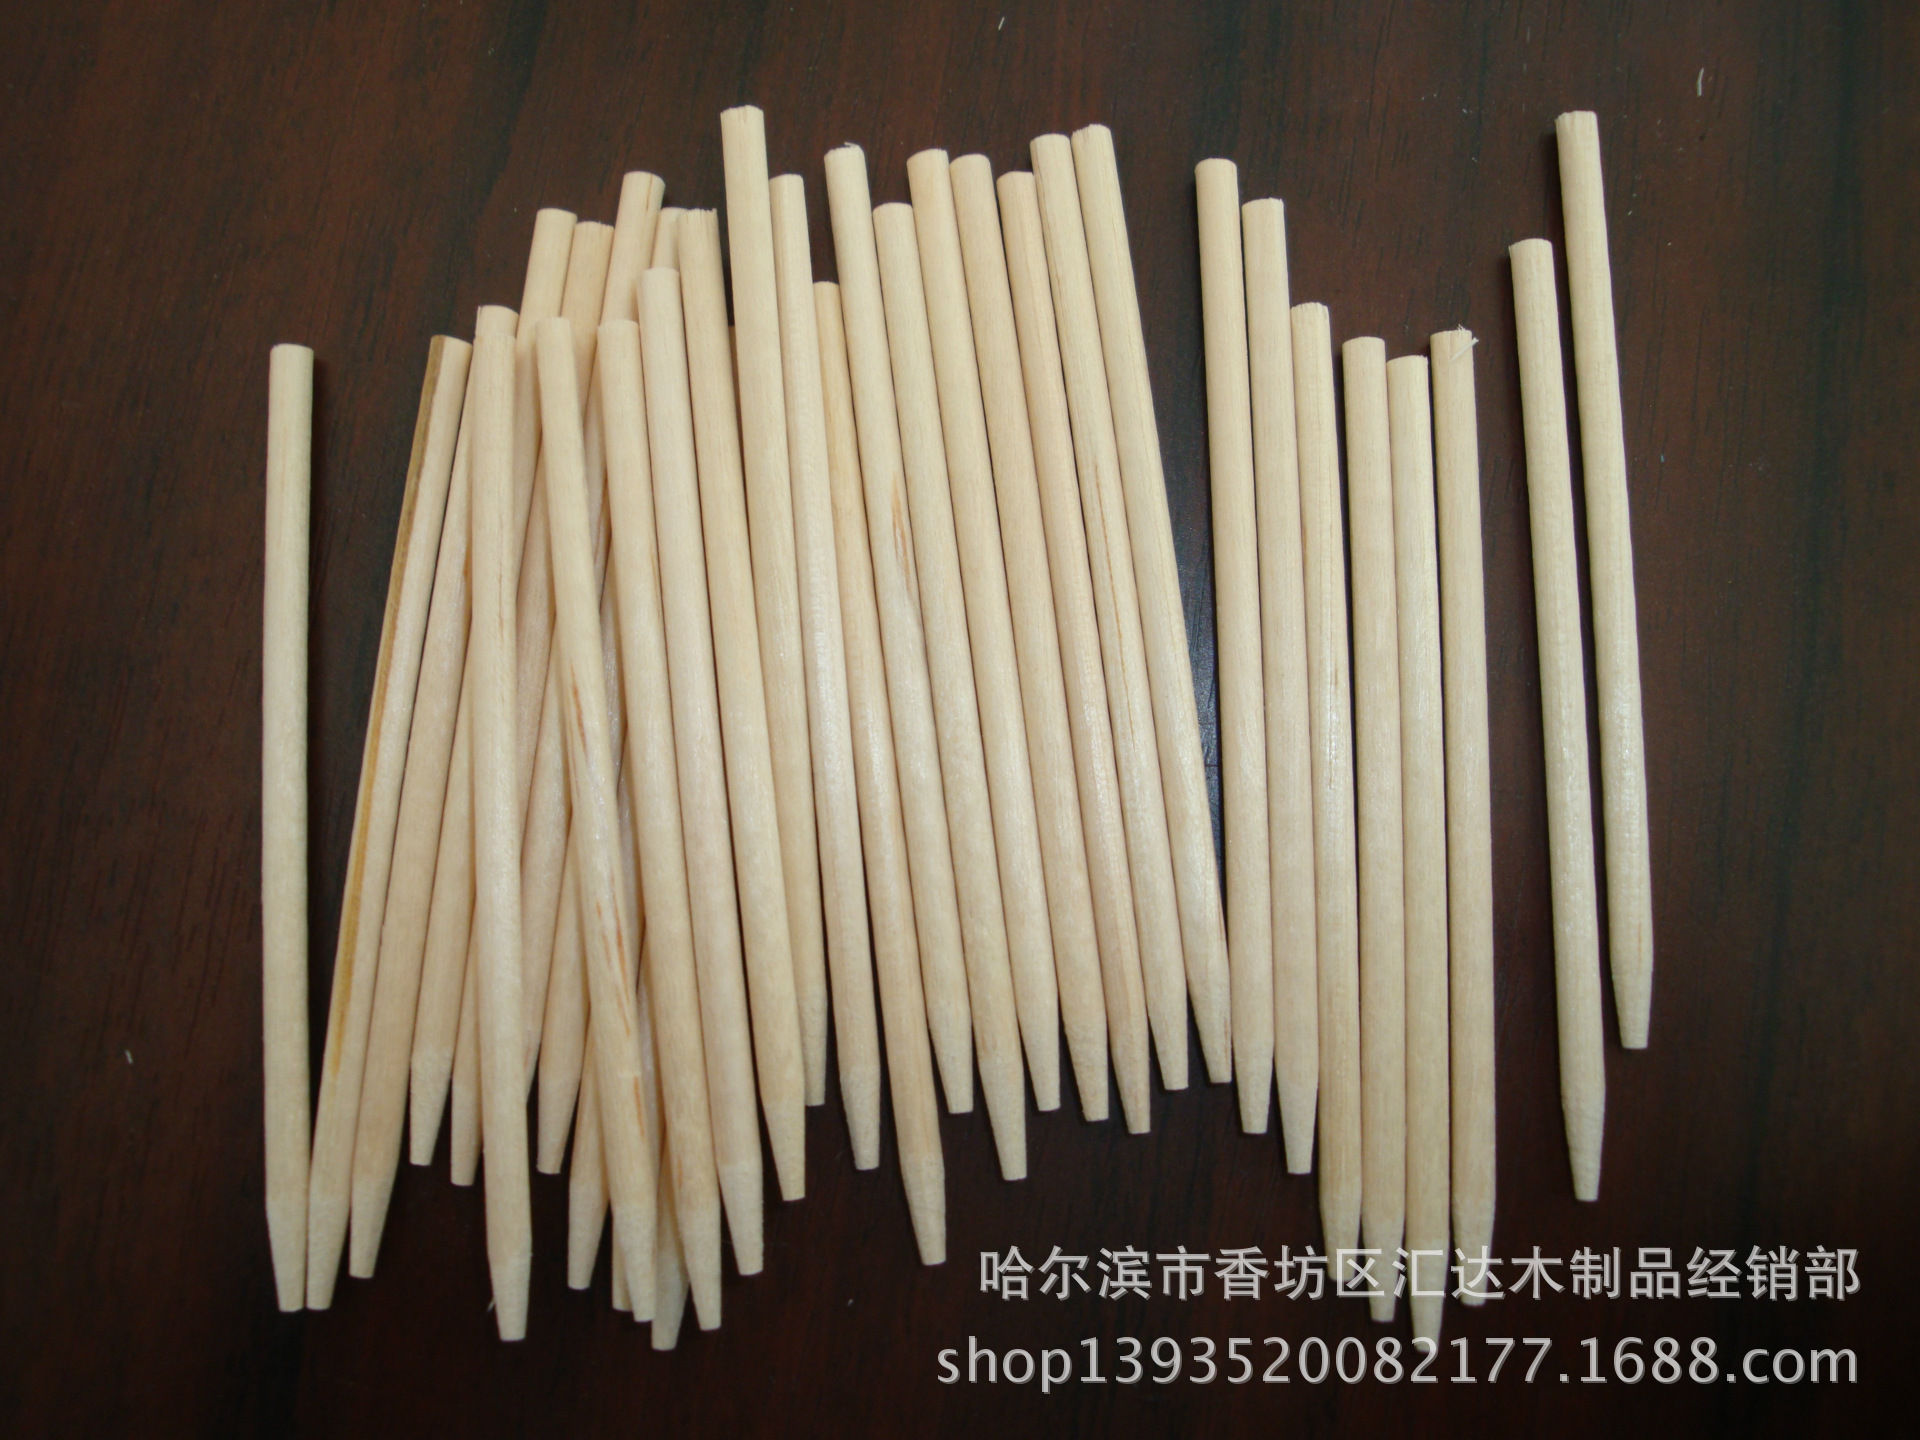 厂家供应糖棒 圆木糖棒 环保磨尖糖棒 一次性木质糖棒示例图2